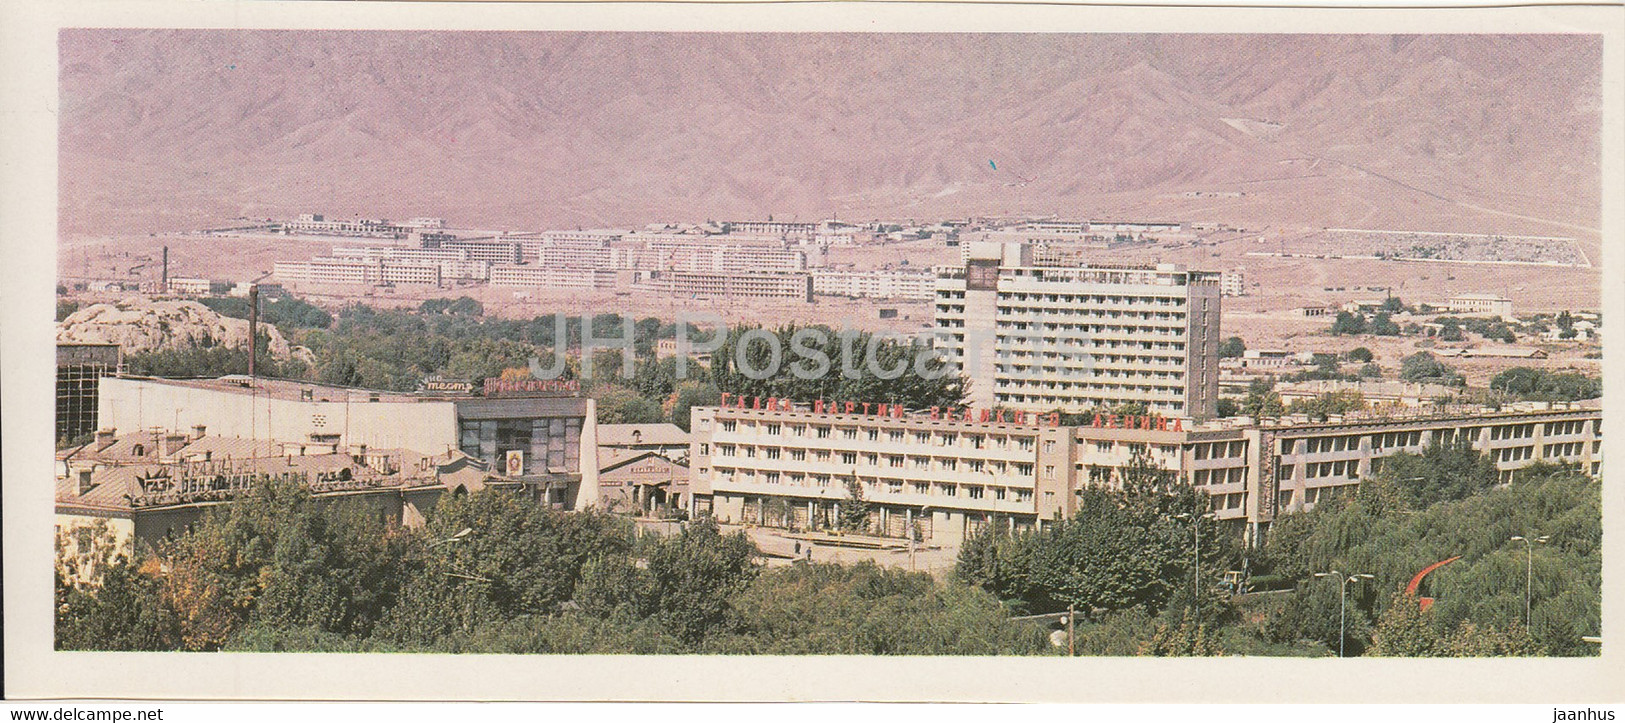 Leninabad - Khujand - New Neighborhoods Are Growing - 1979 - Tajikistan USSR - Unused - Tadzjikistan